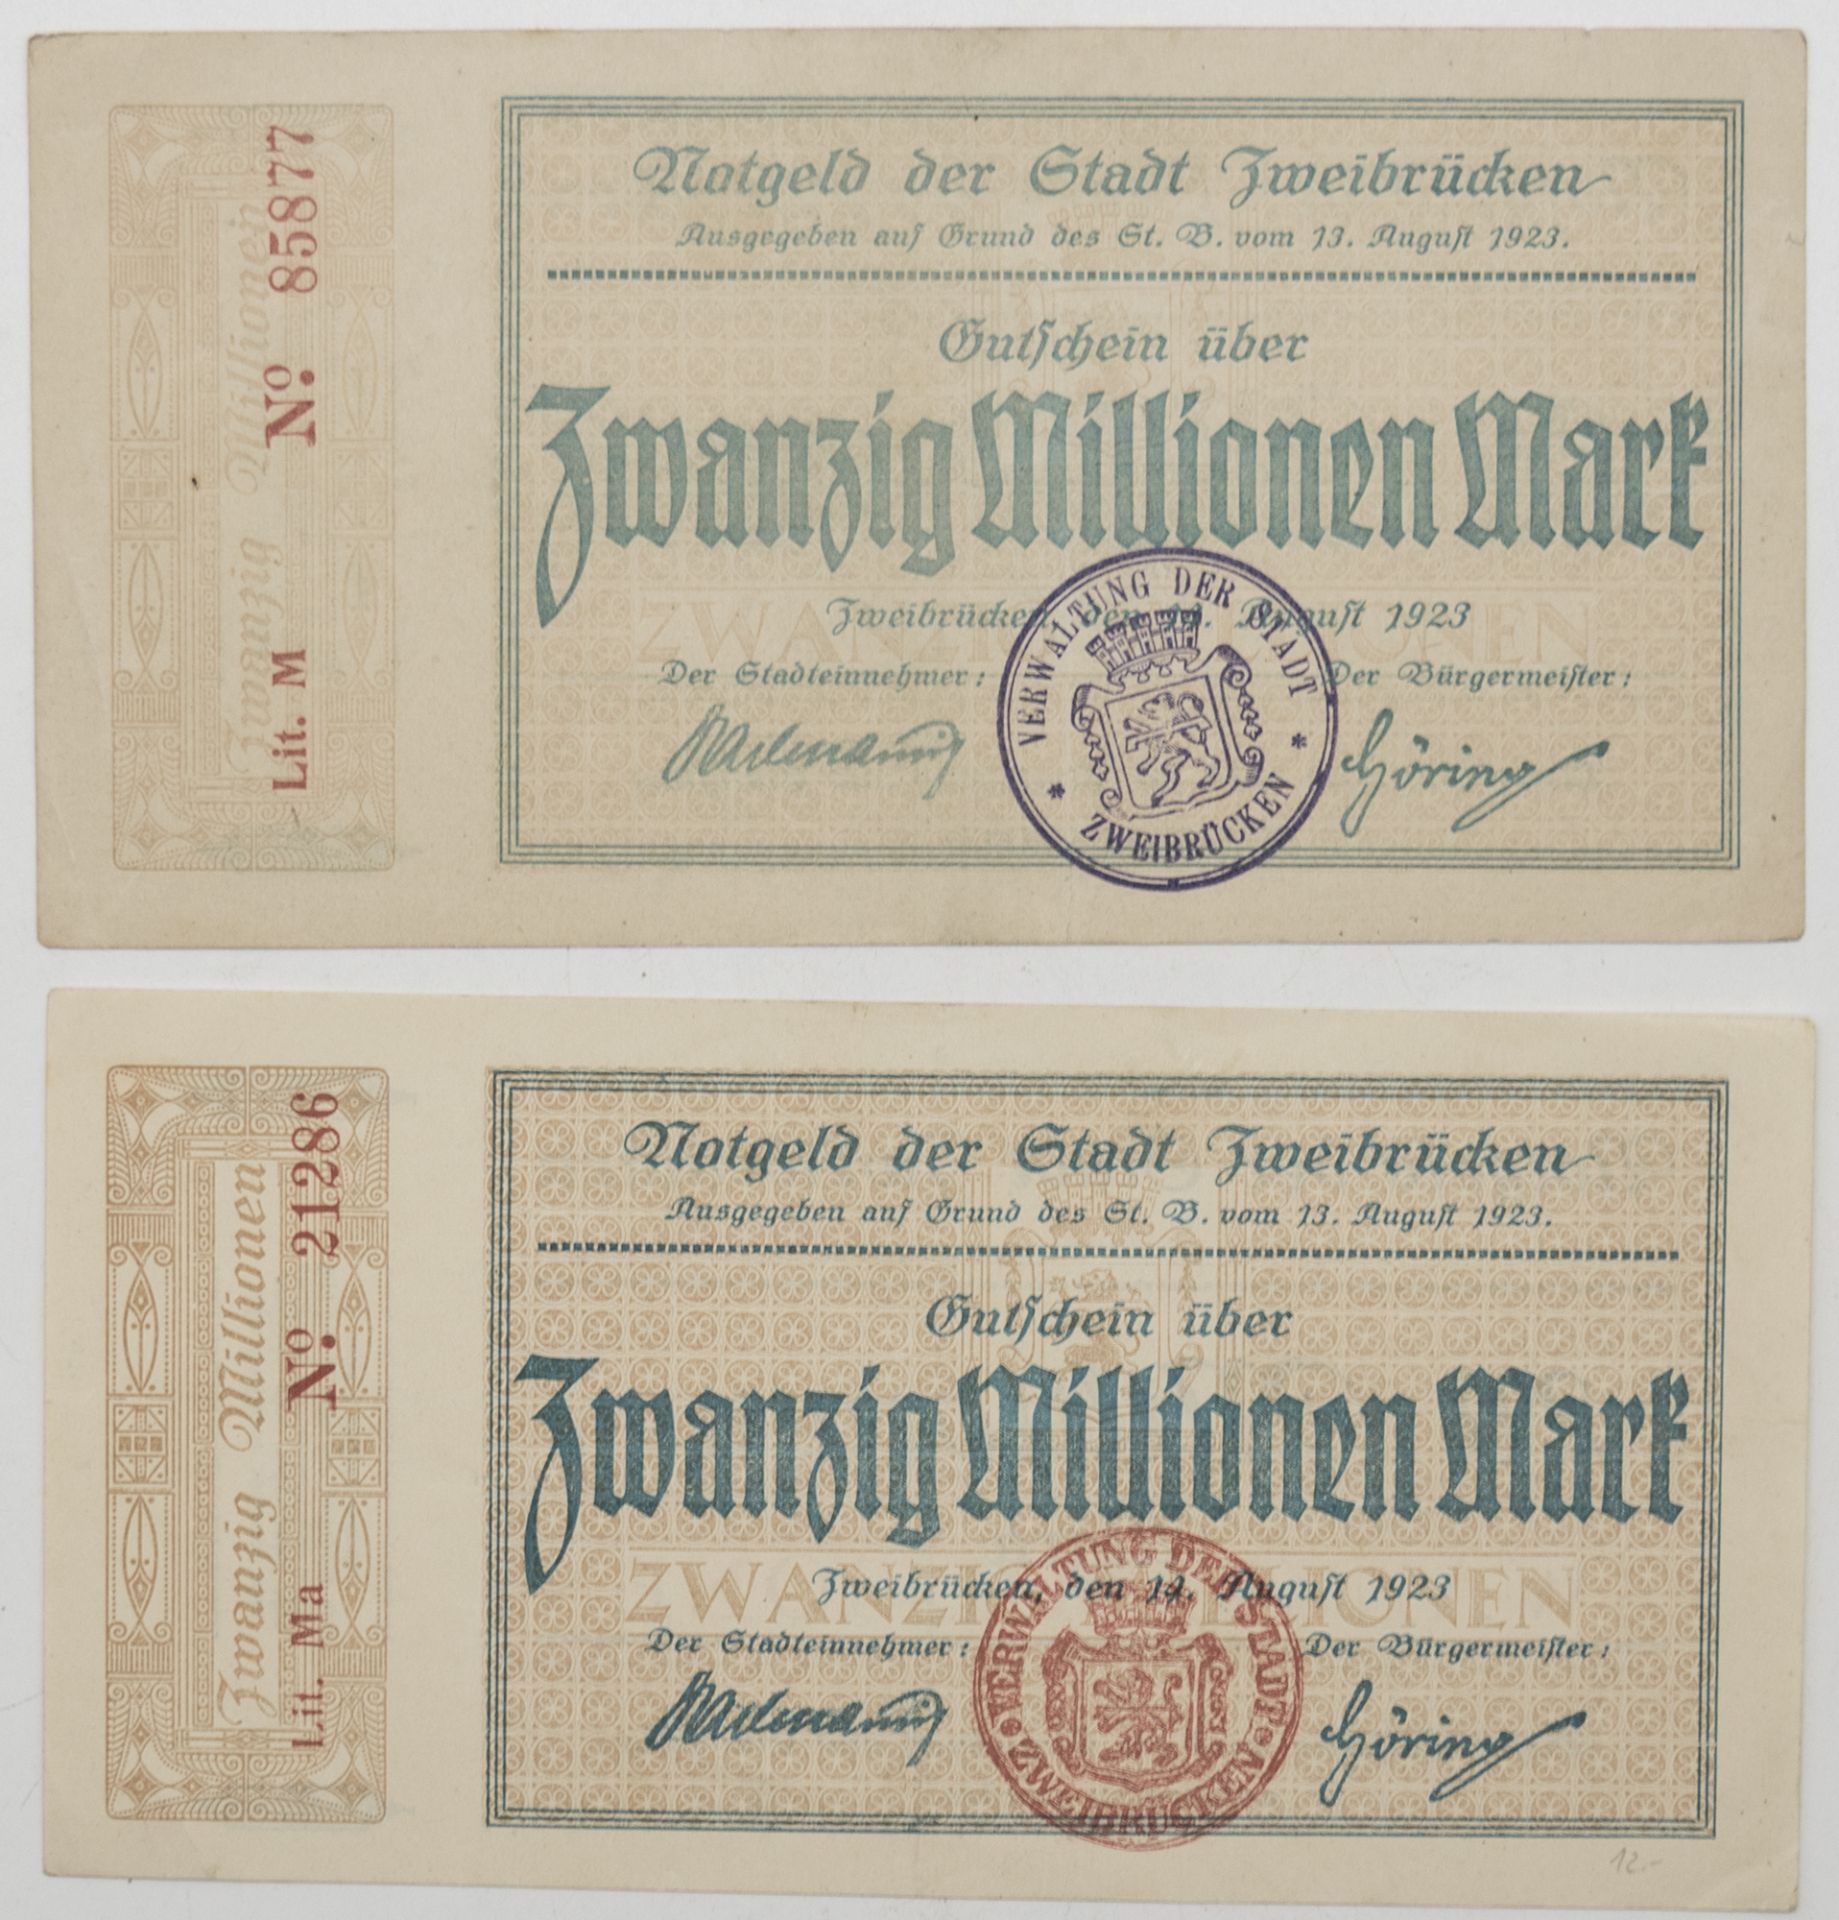 Notgeld der Stadt Zweibrücken 14. August 1923. 2 x 20 Millionen Mark. Erhaltung: hervorragend.